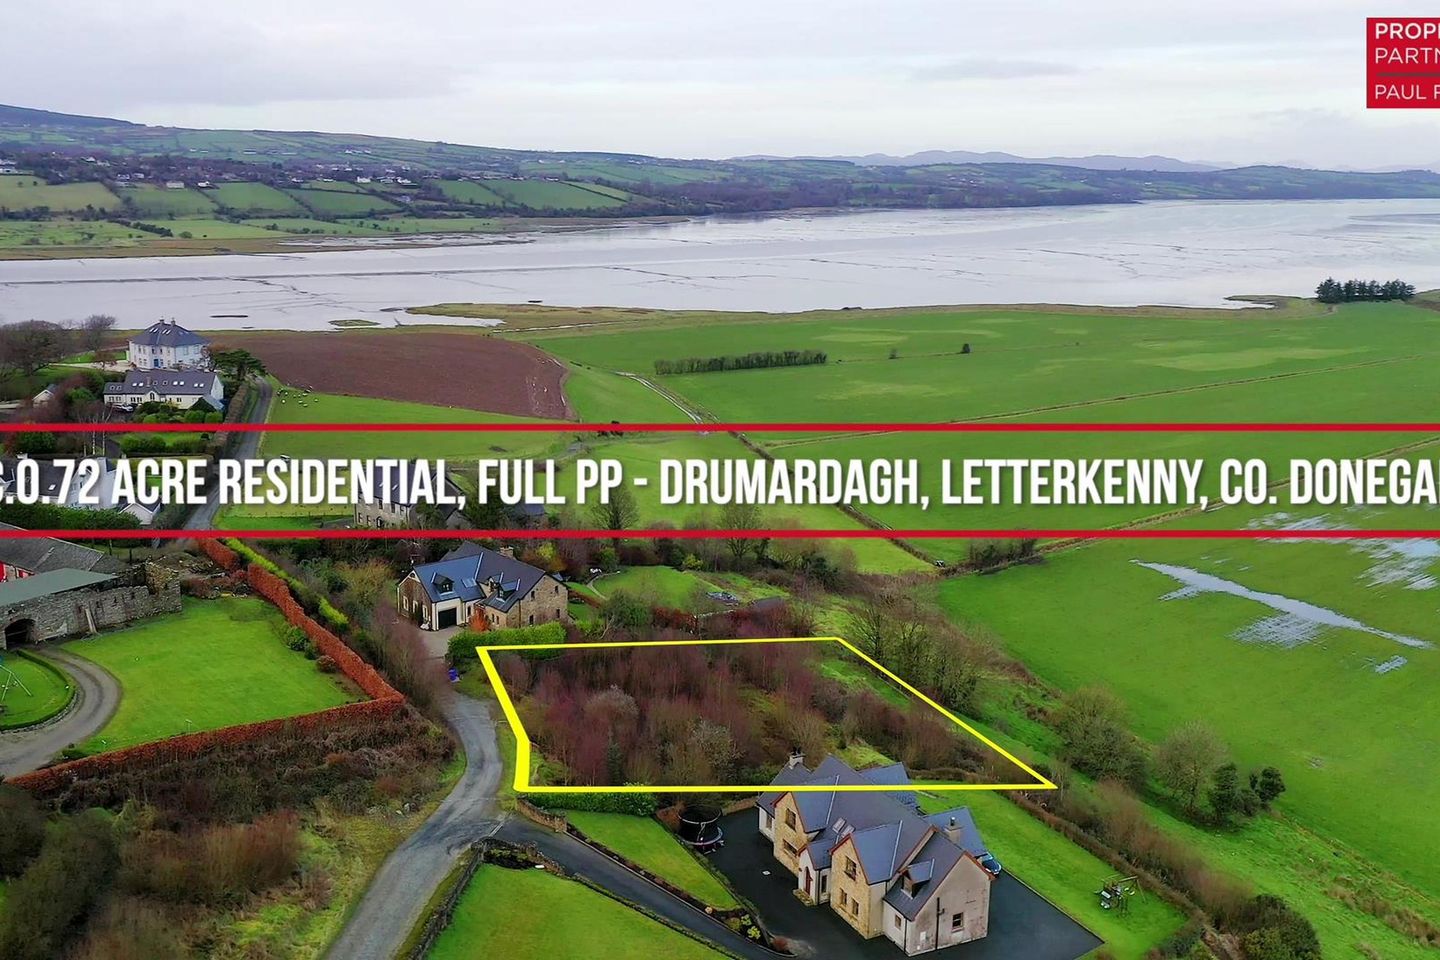 Drumardagh, Letterkenny, Co. Donegal